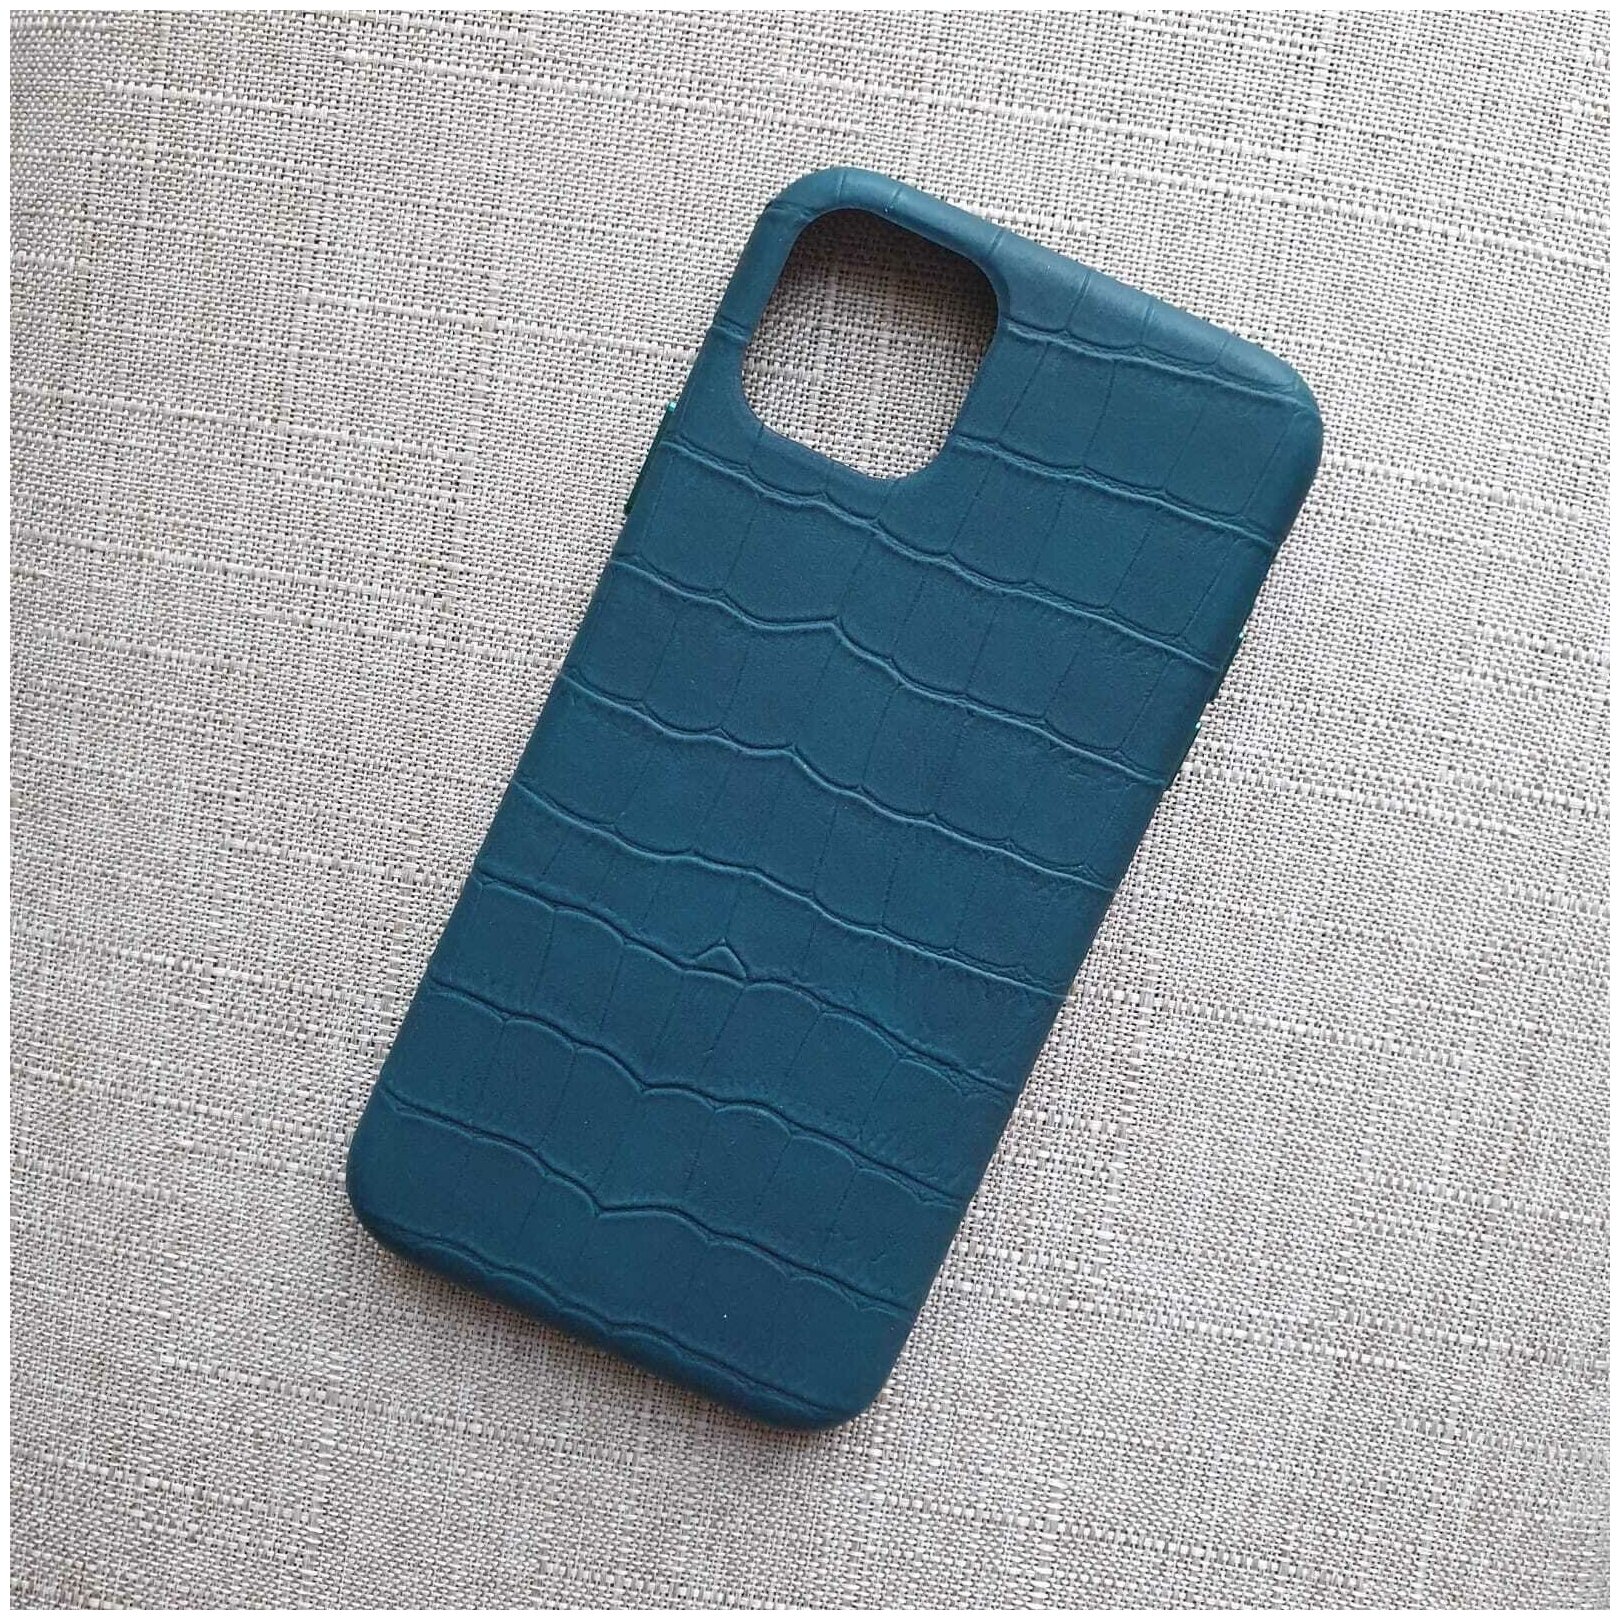 Кожаный чехол для iPhone 11 Pro Max синий под кожу крокодила. Бренд Vogok